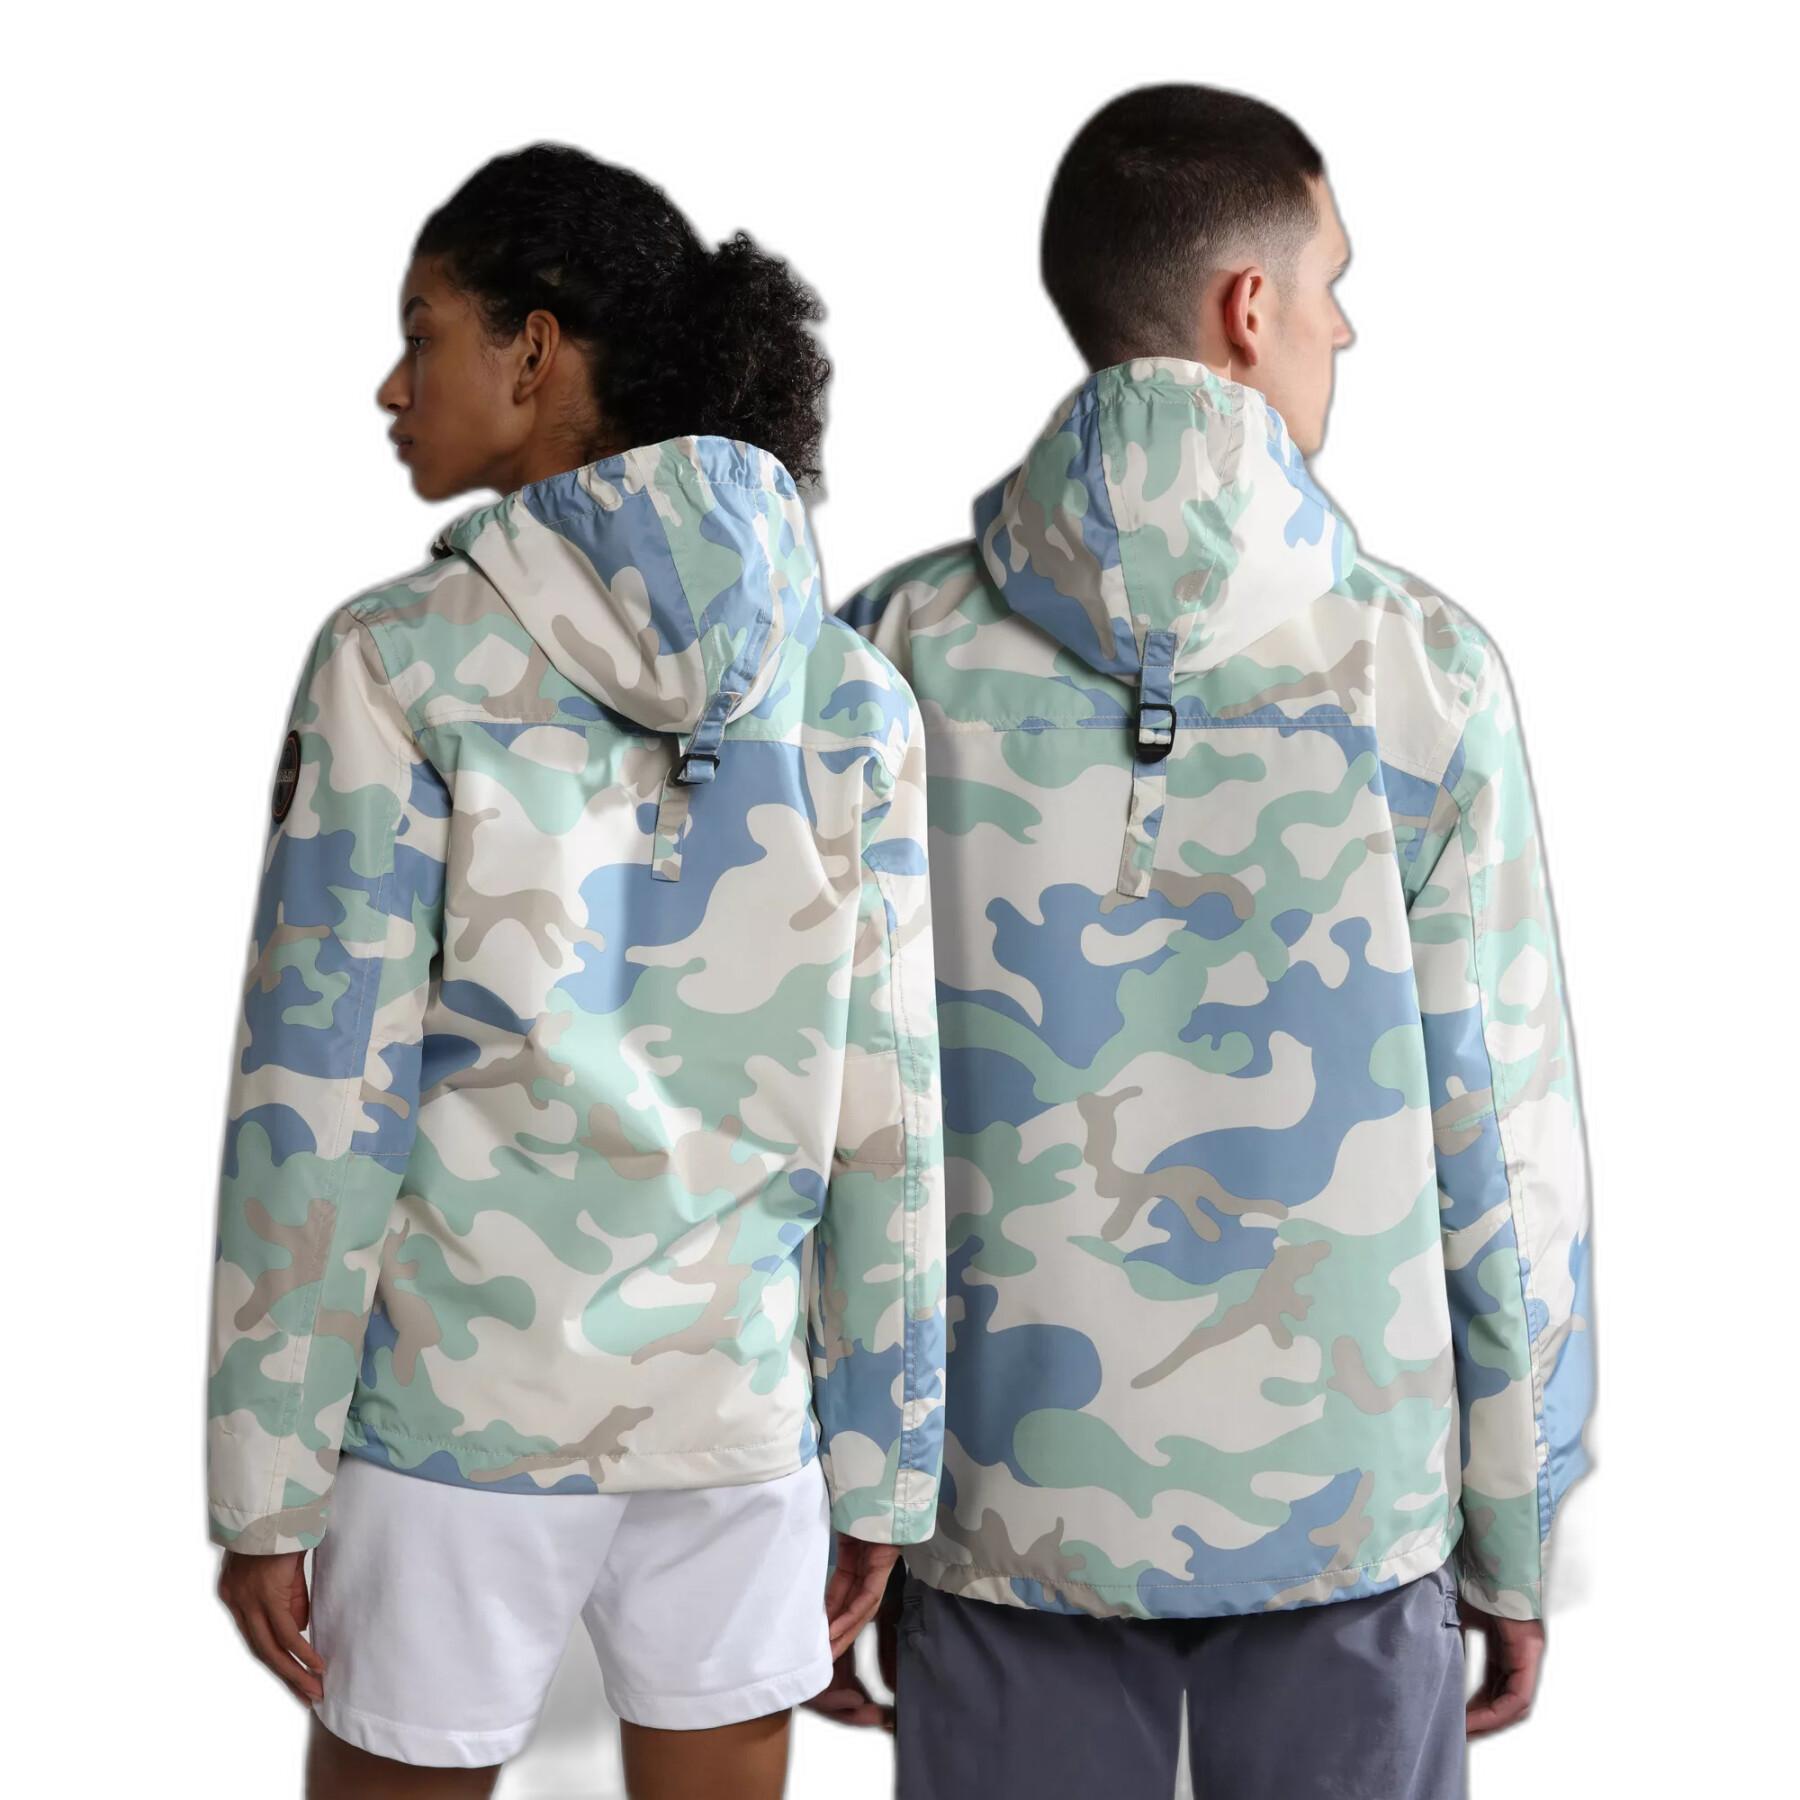 Waterproof jacket Napapijri Rainforest